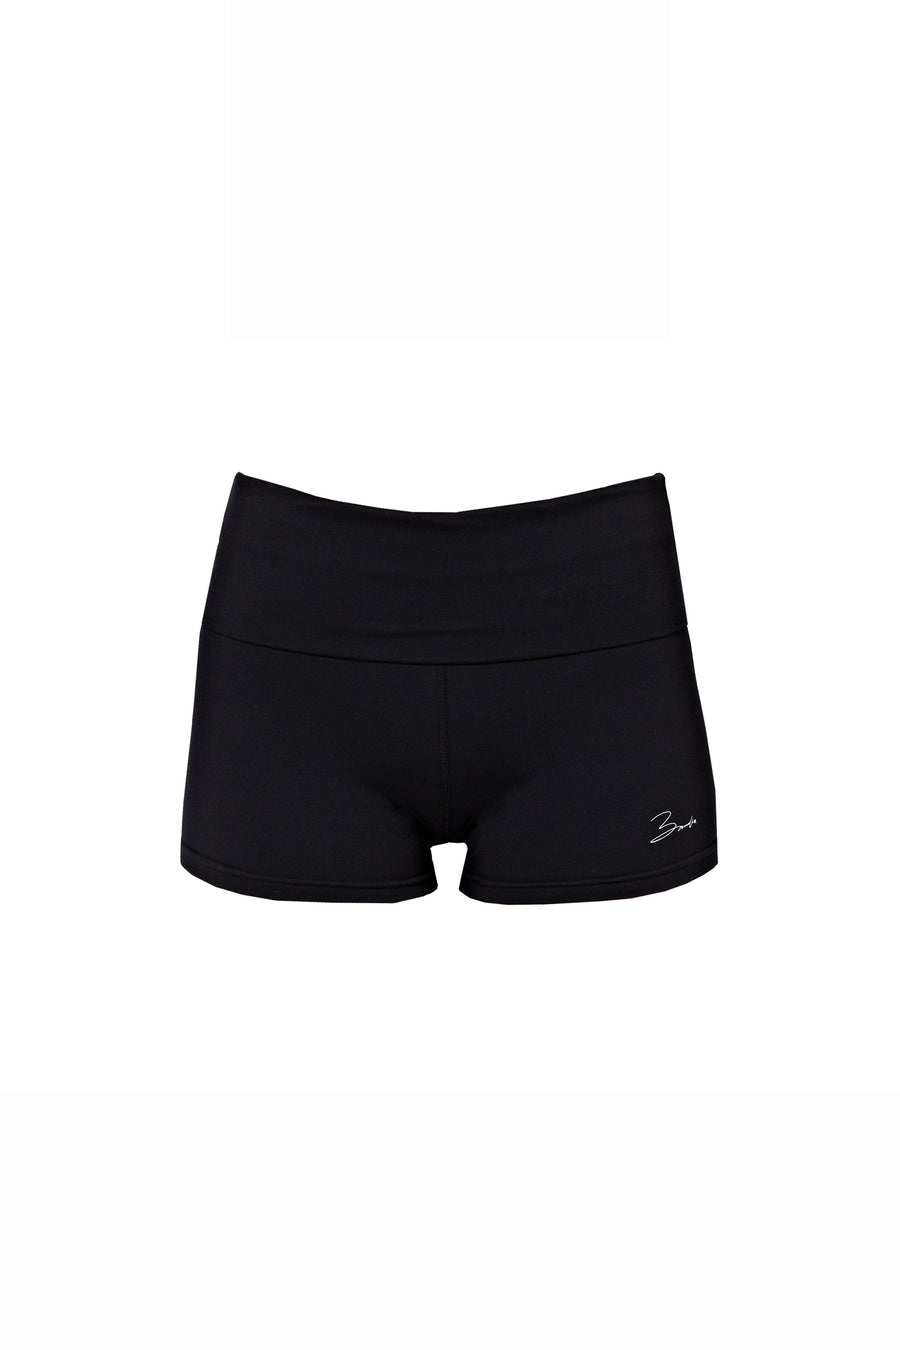 BASE shorts - black   -  CLOTHING  -  B Ā M B A S W I M